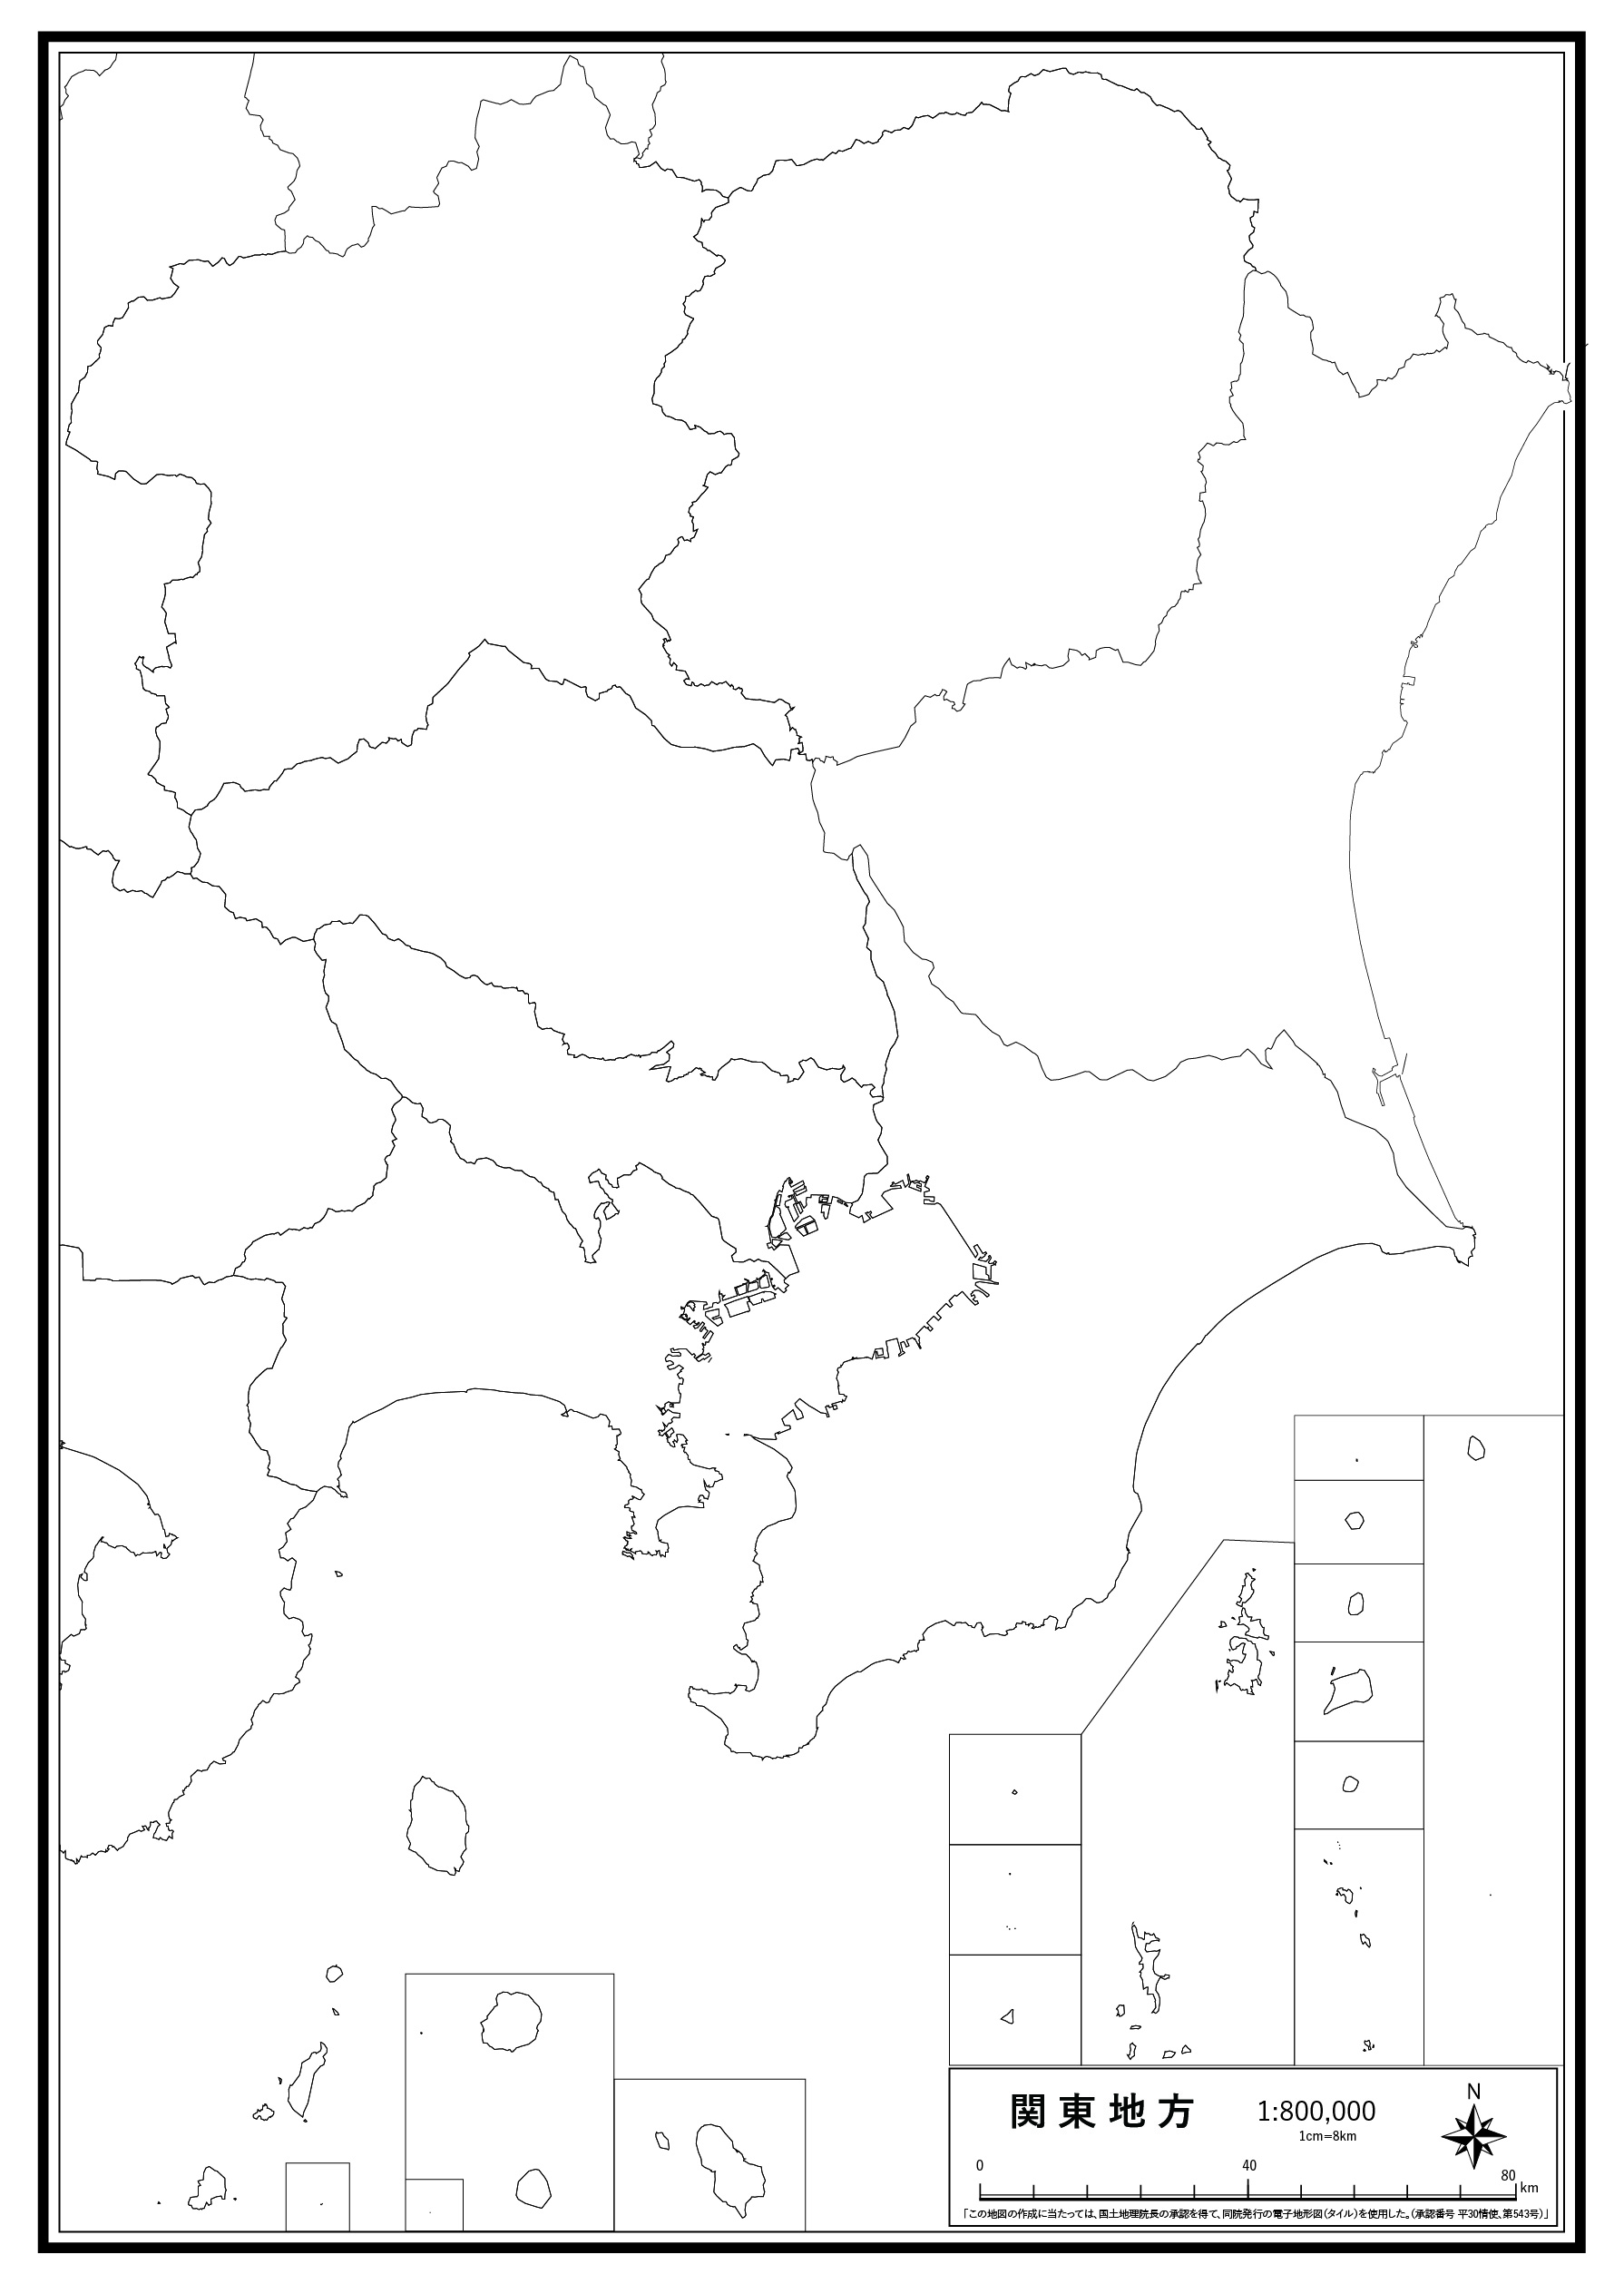 関東地方 楽地図 日本全国の白地図ダウンロードサイト